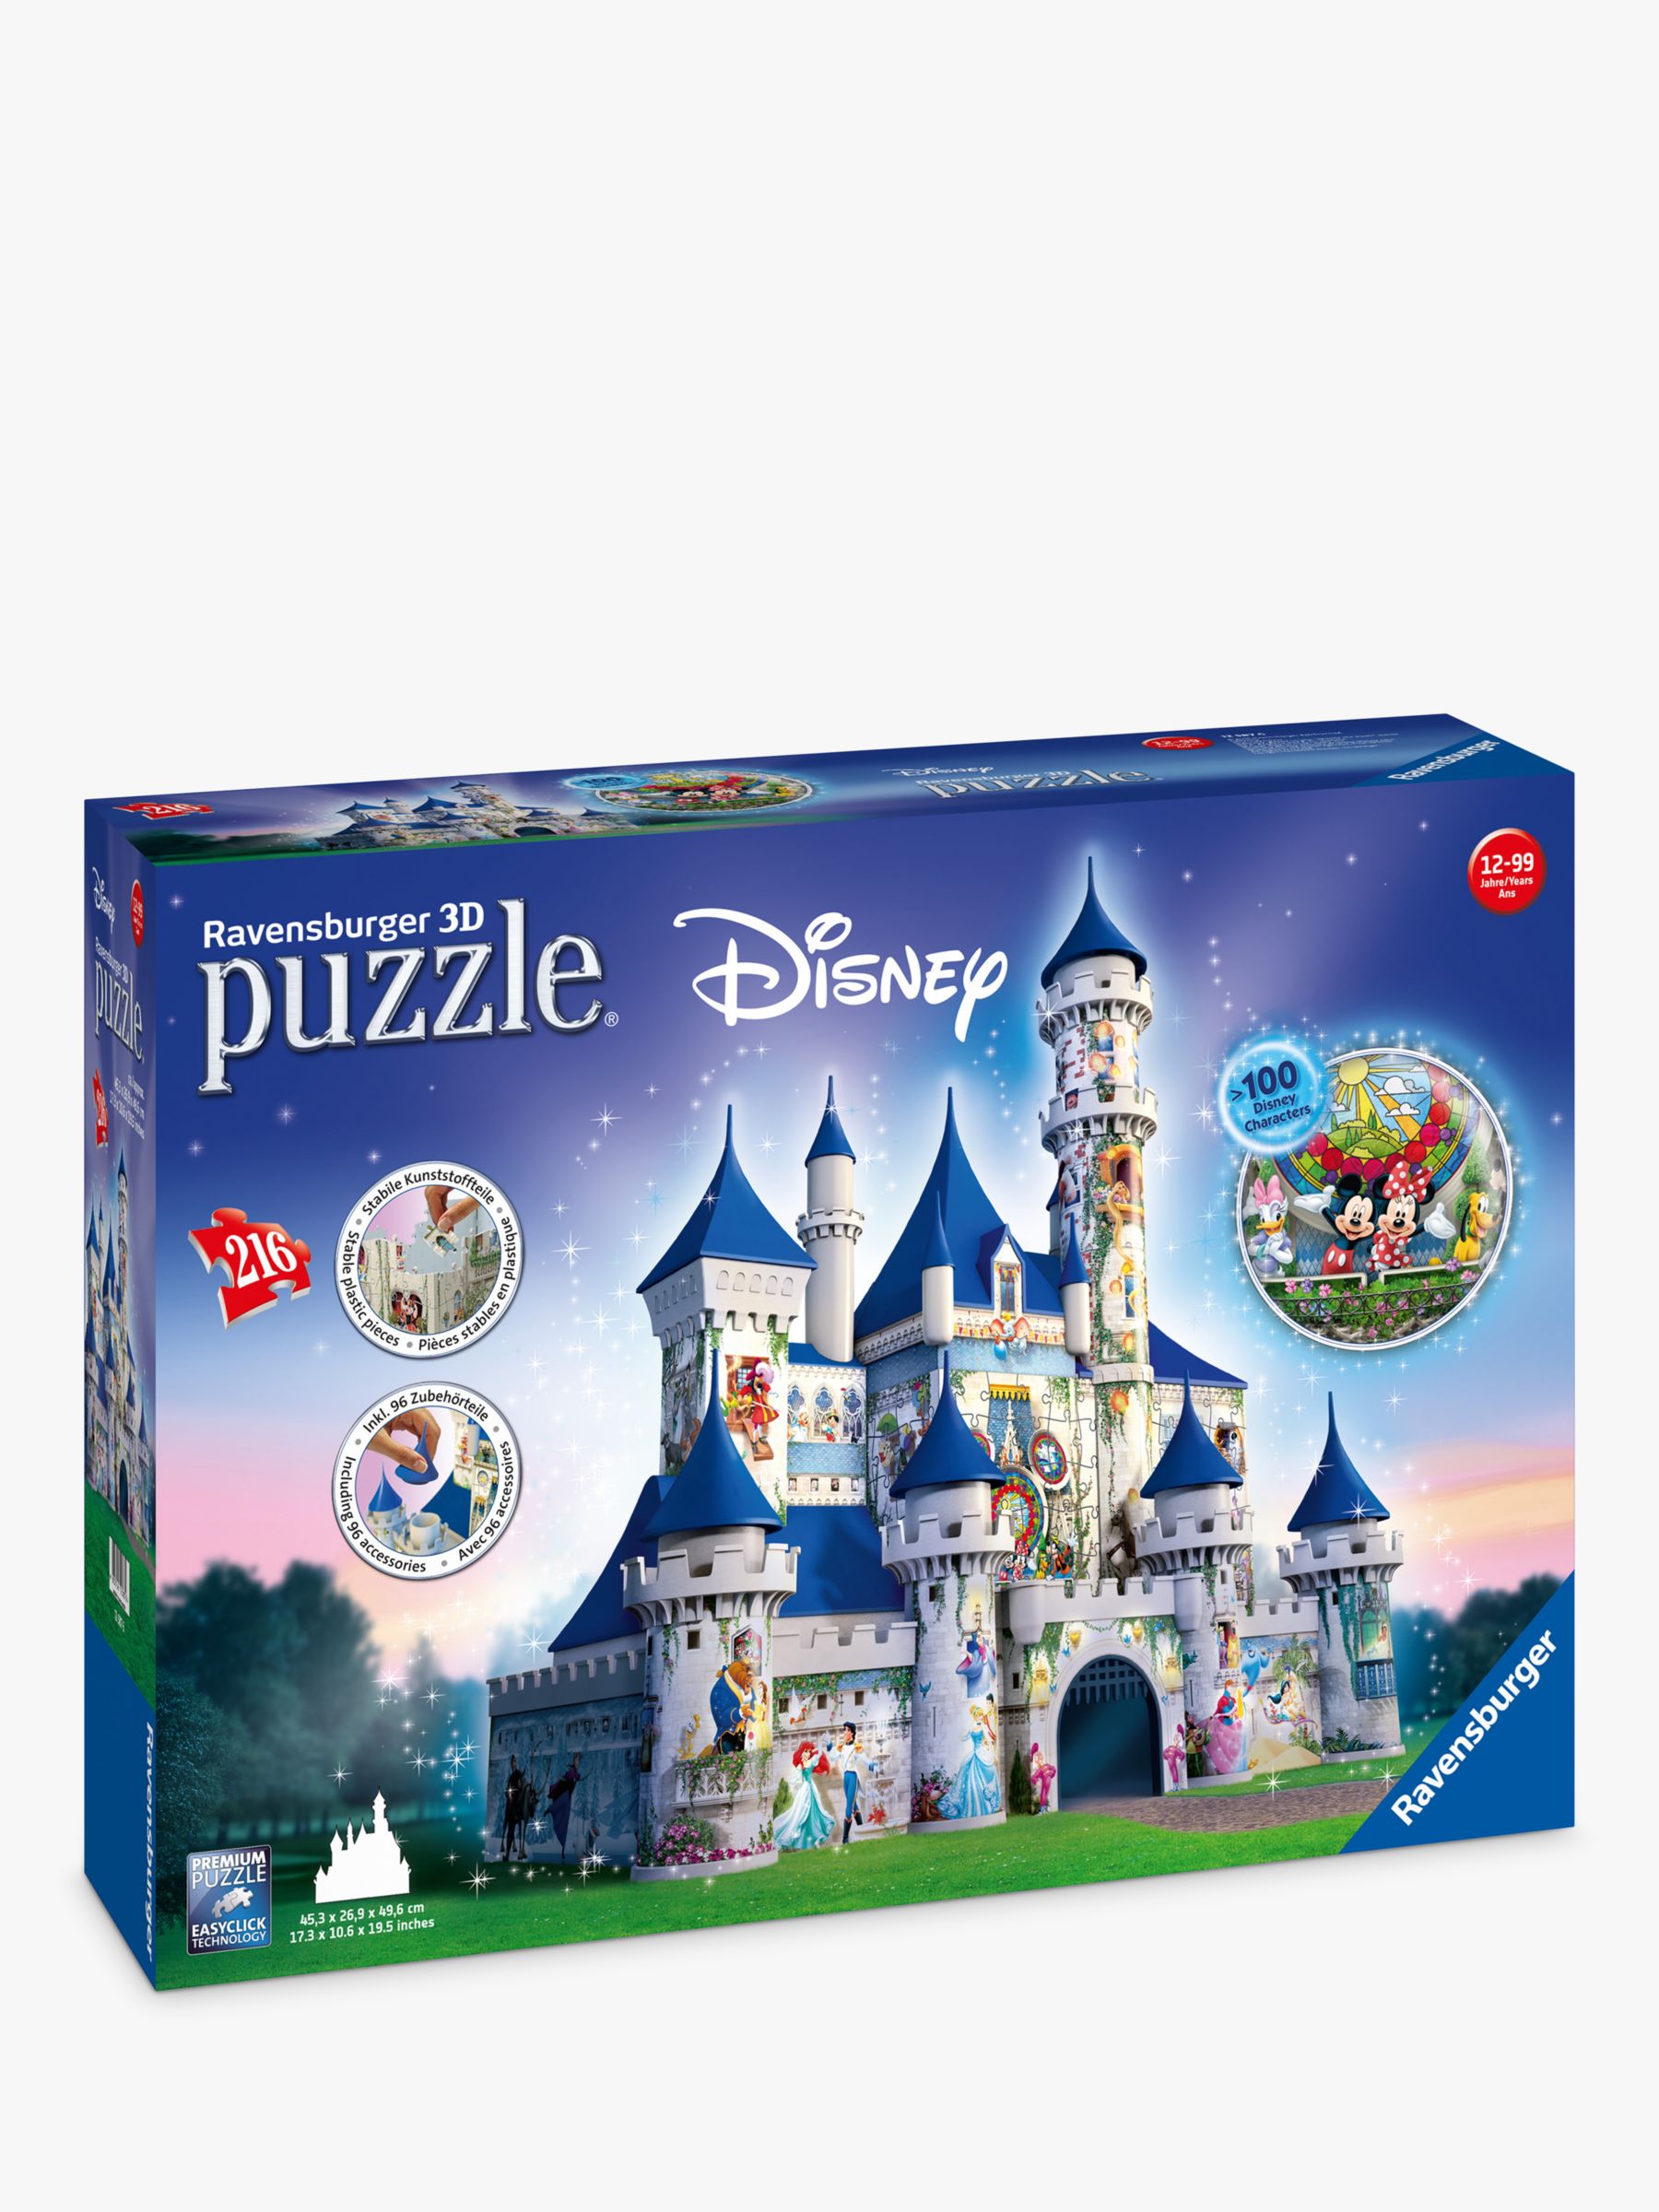 Ravensburger Disney Castle 3D Jigsaw Puzzle, 216 Pieces at ...